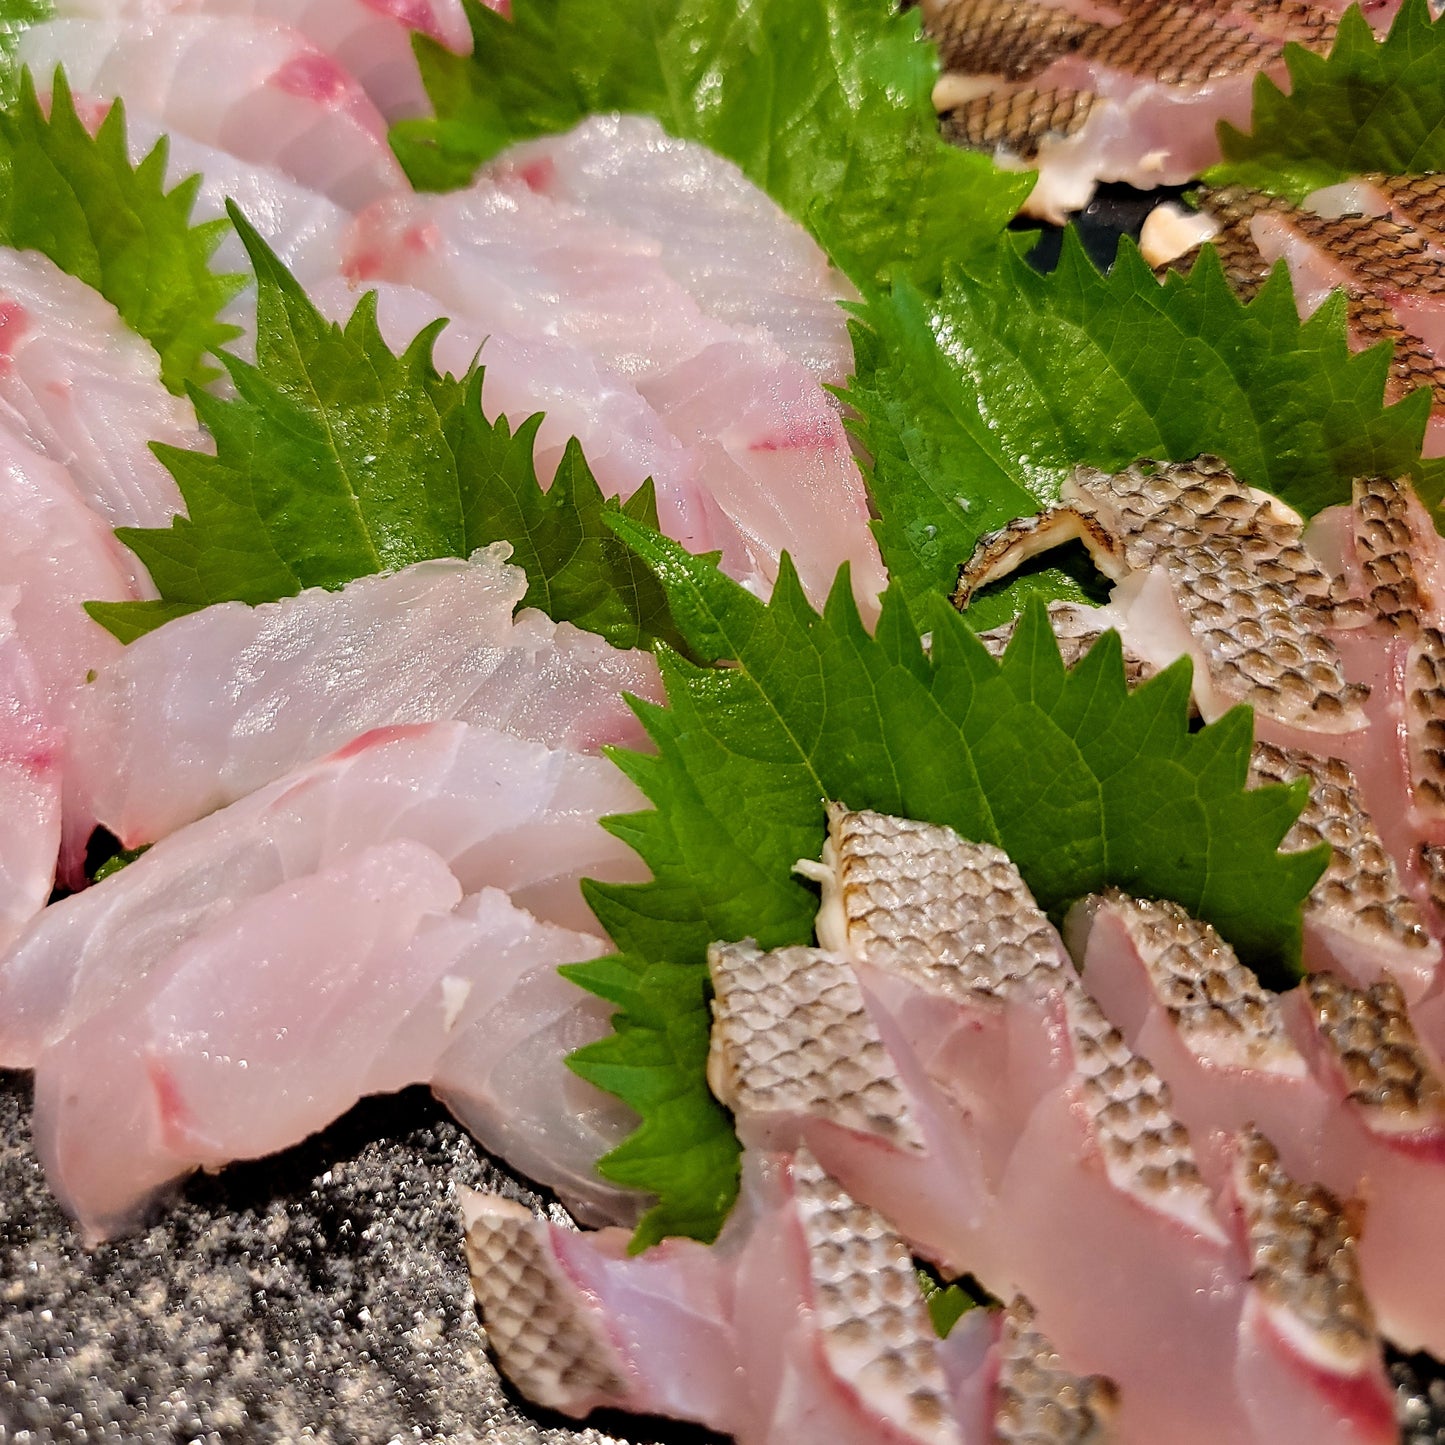 Fresh Chicken Grunt (Isaki) 新鮮日本黃雞魚